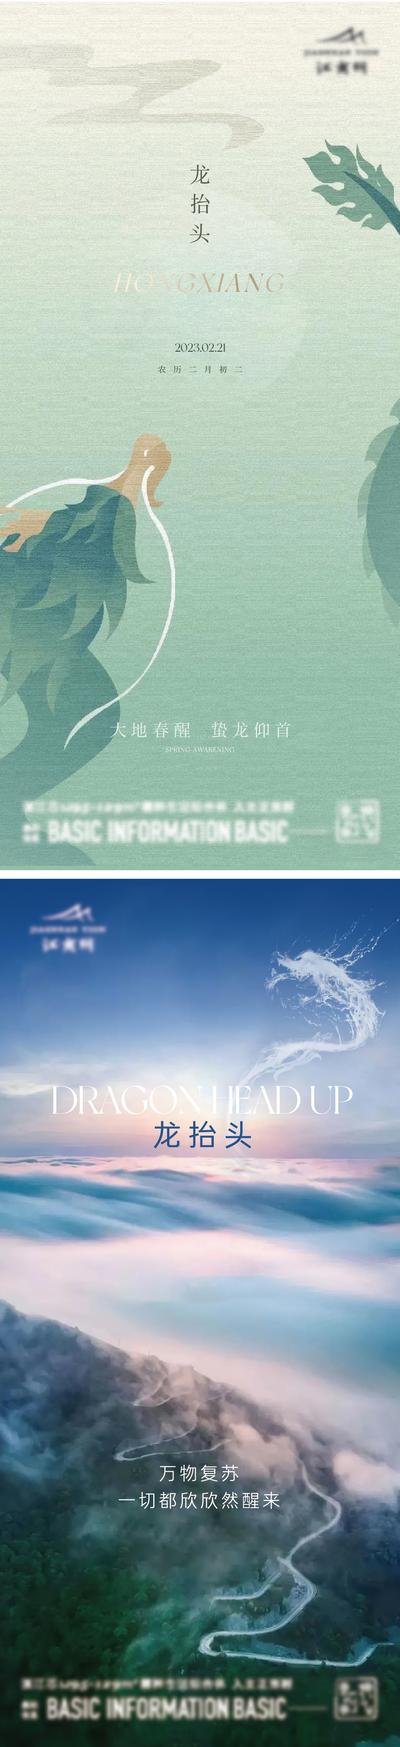 【南门网】海报 中国传统节日 龙抬头 二月二 清新 简约